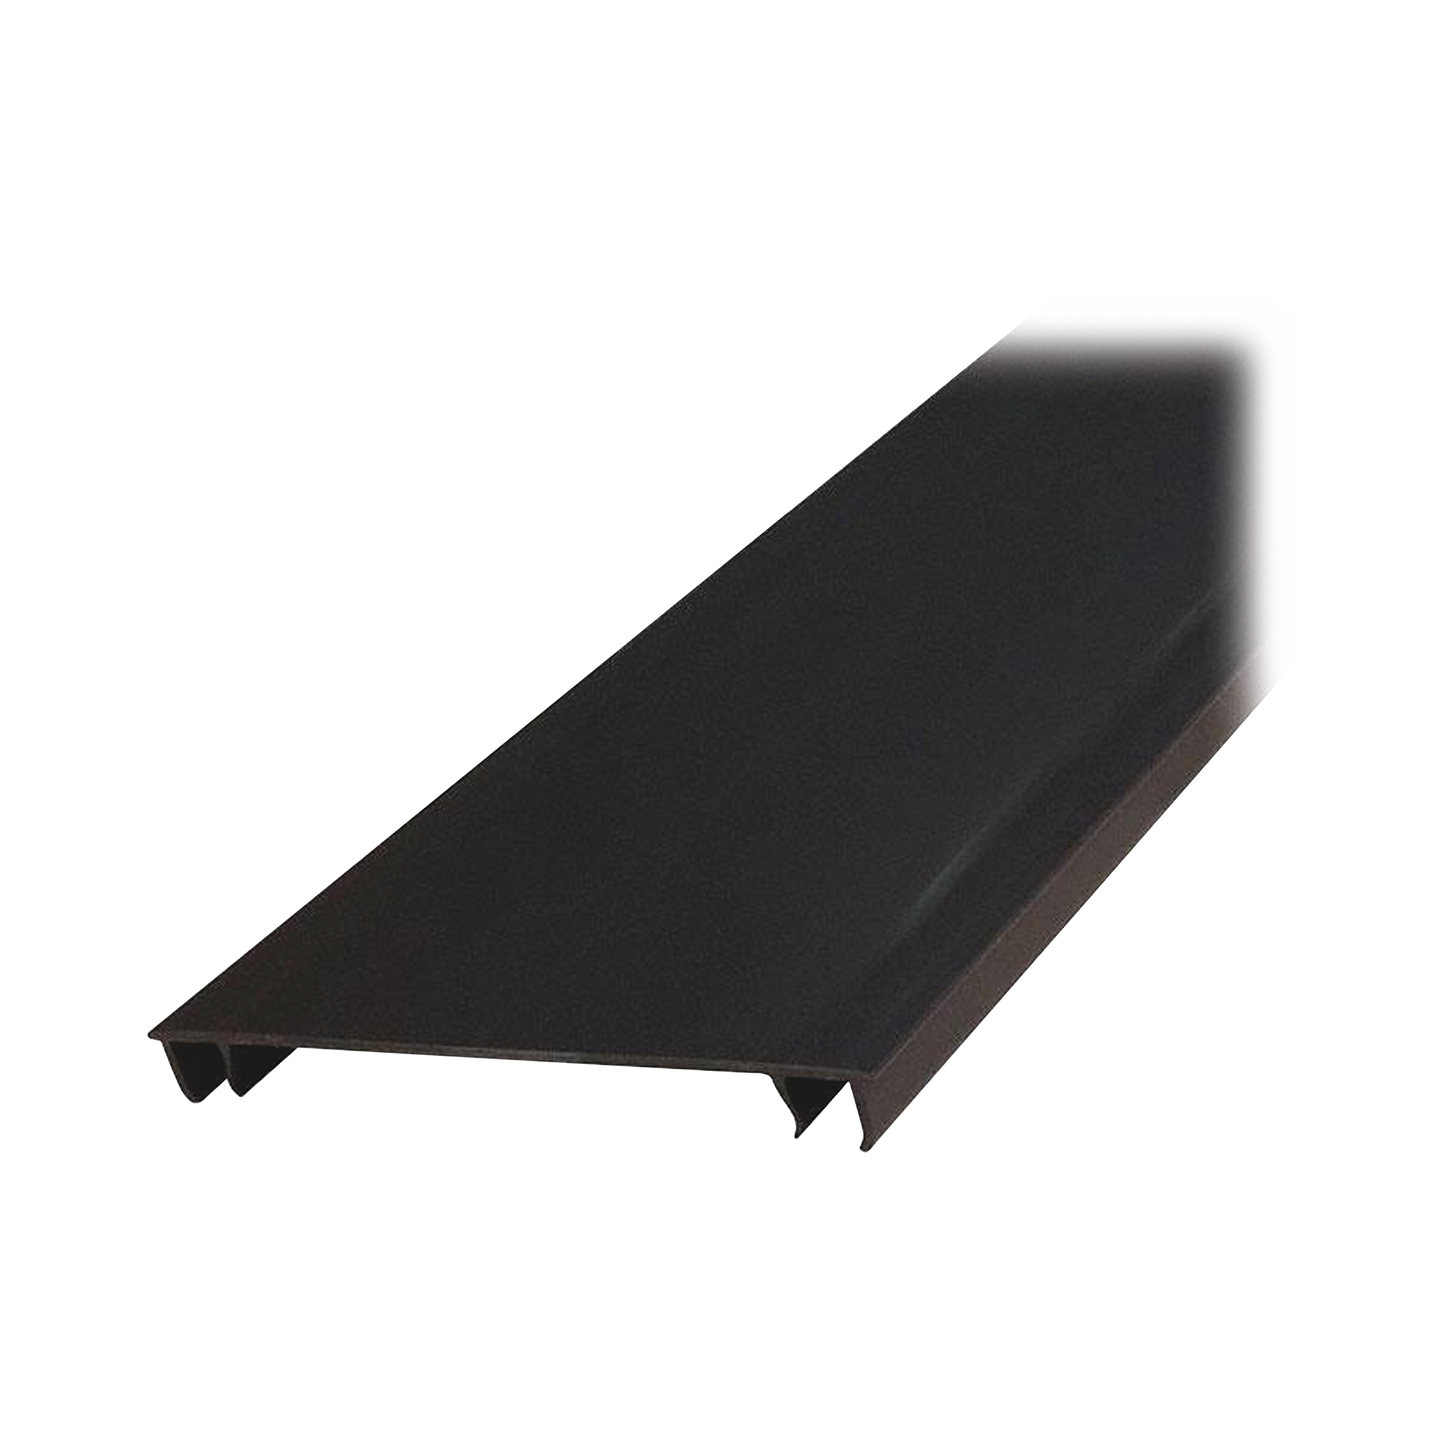 Tapa para Canaleta Ranurada Tipo H, de 55.1 mm de Ancho, 1828.8 mm de Largo, Color Negro